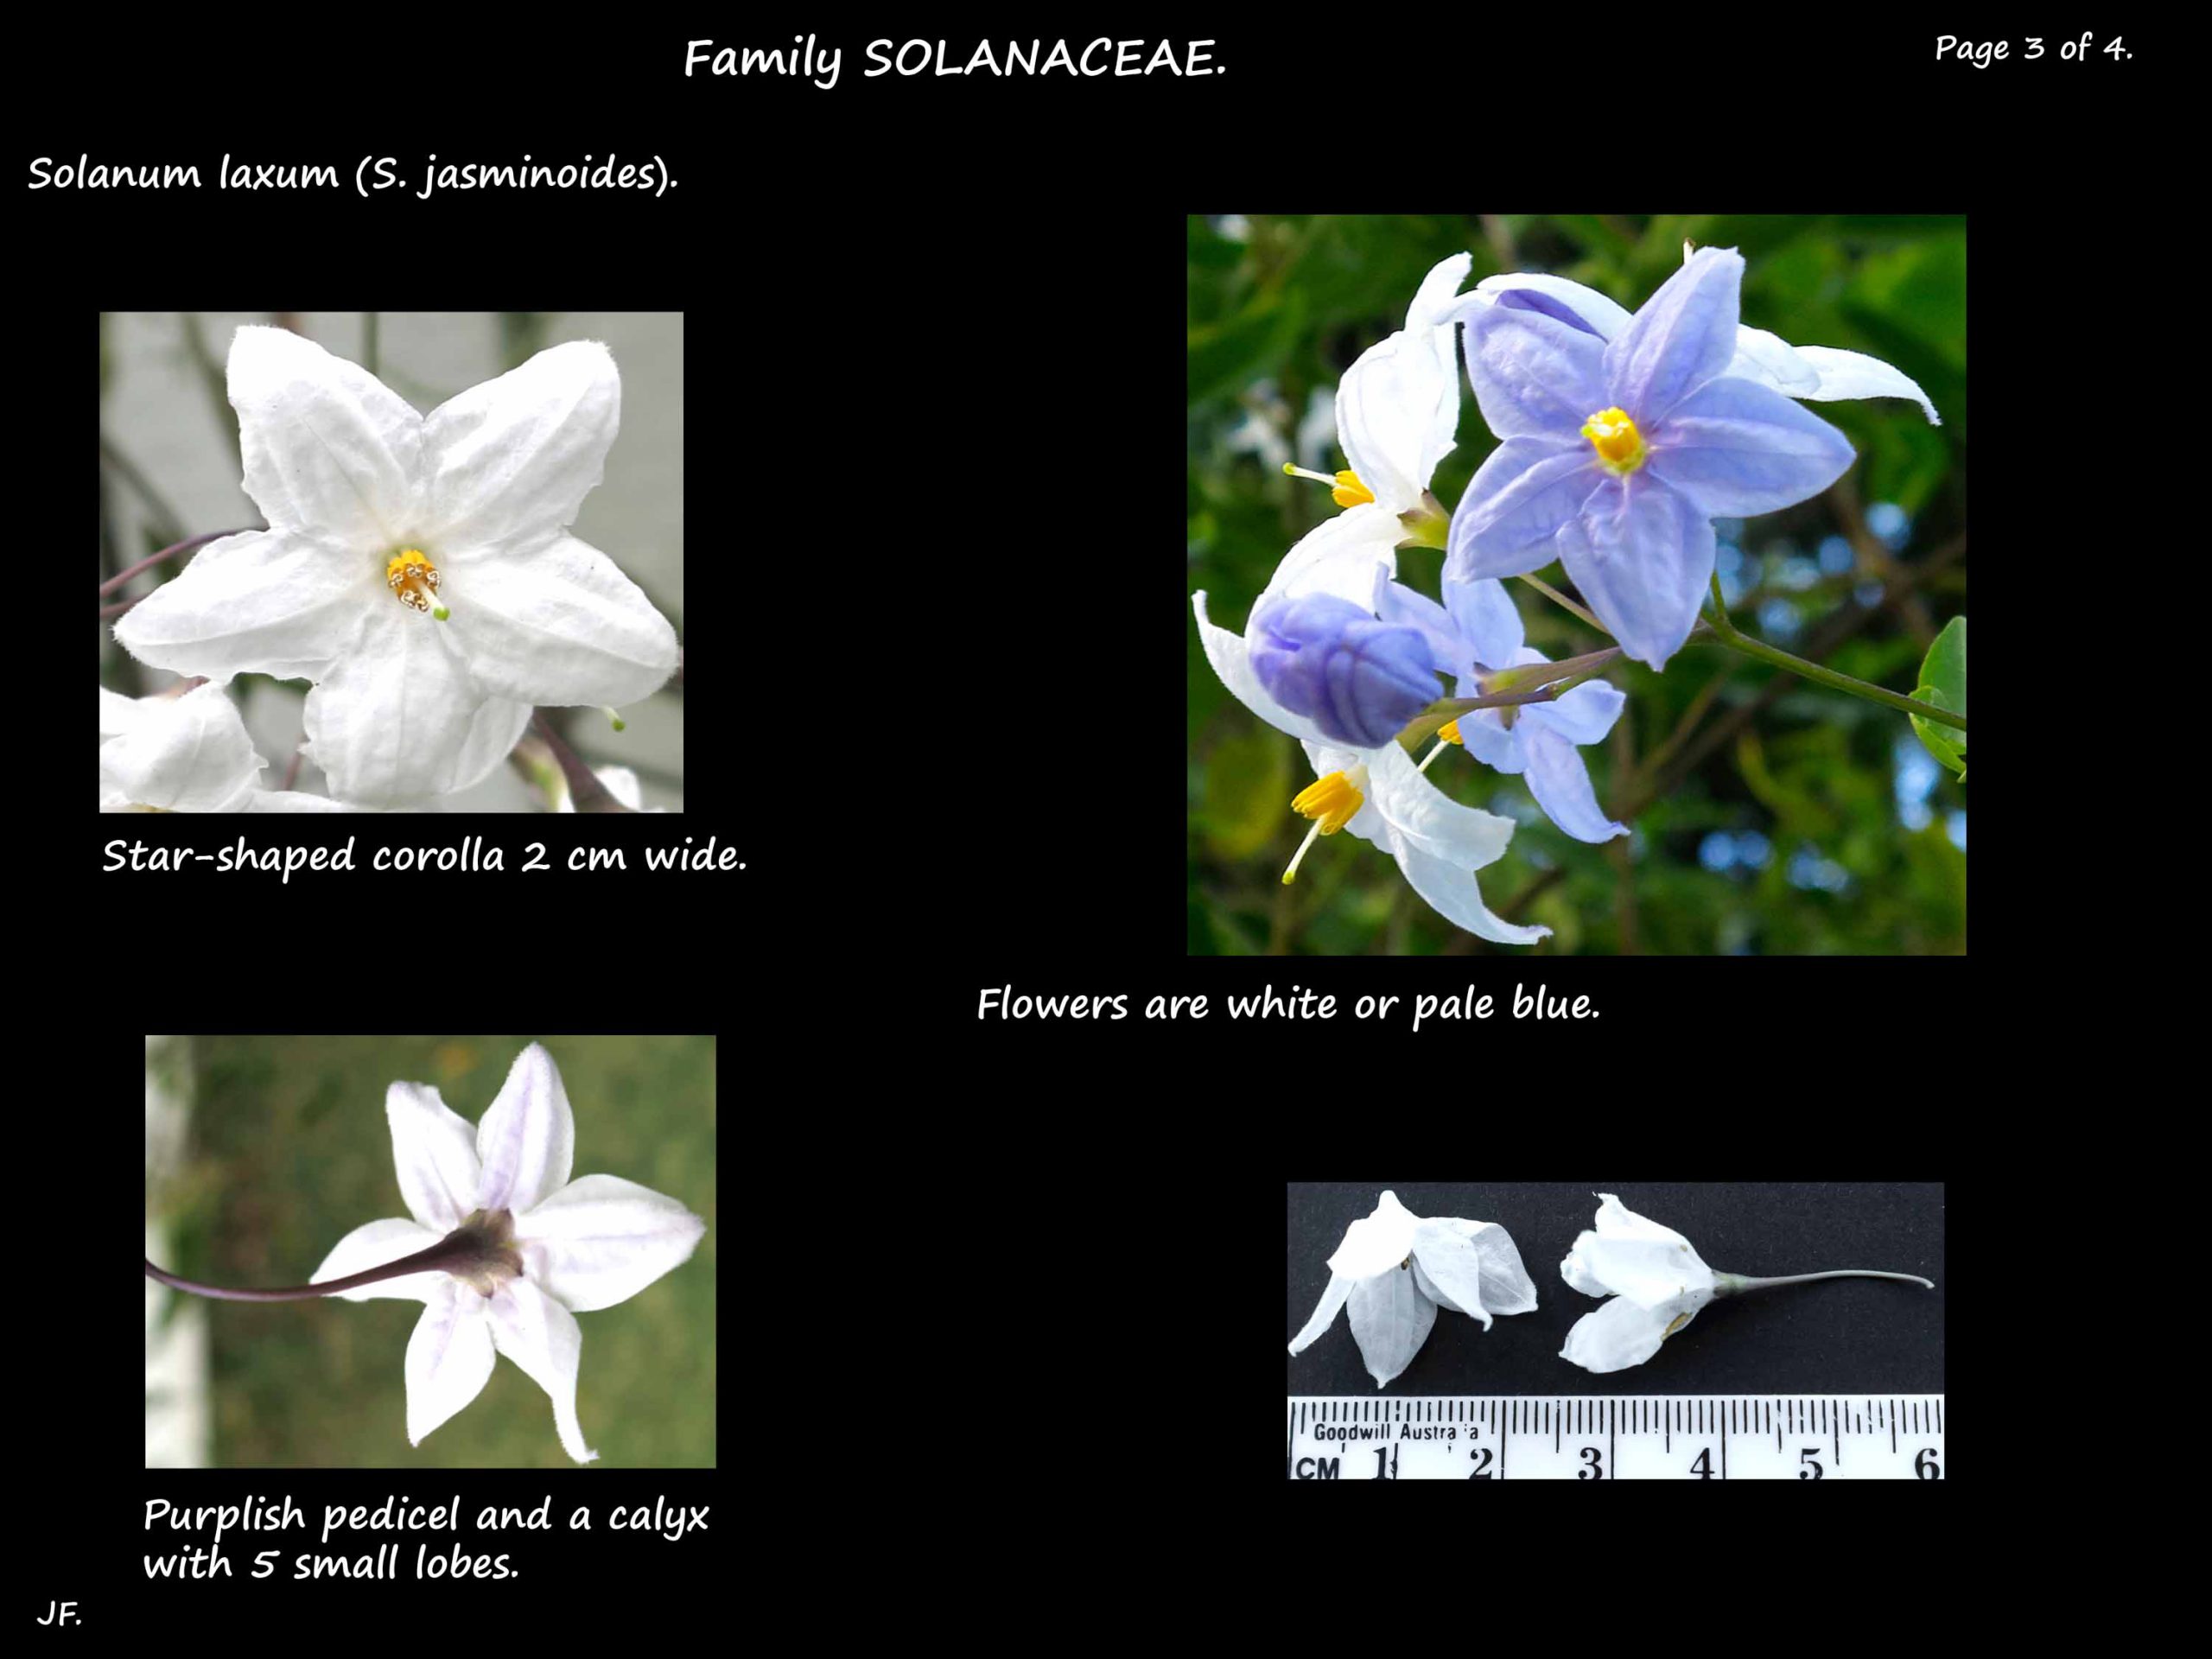 3 Solanum laxum flowers